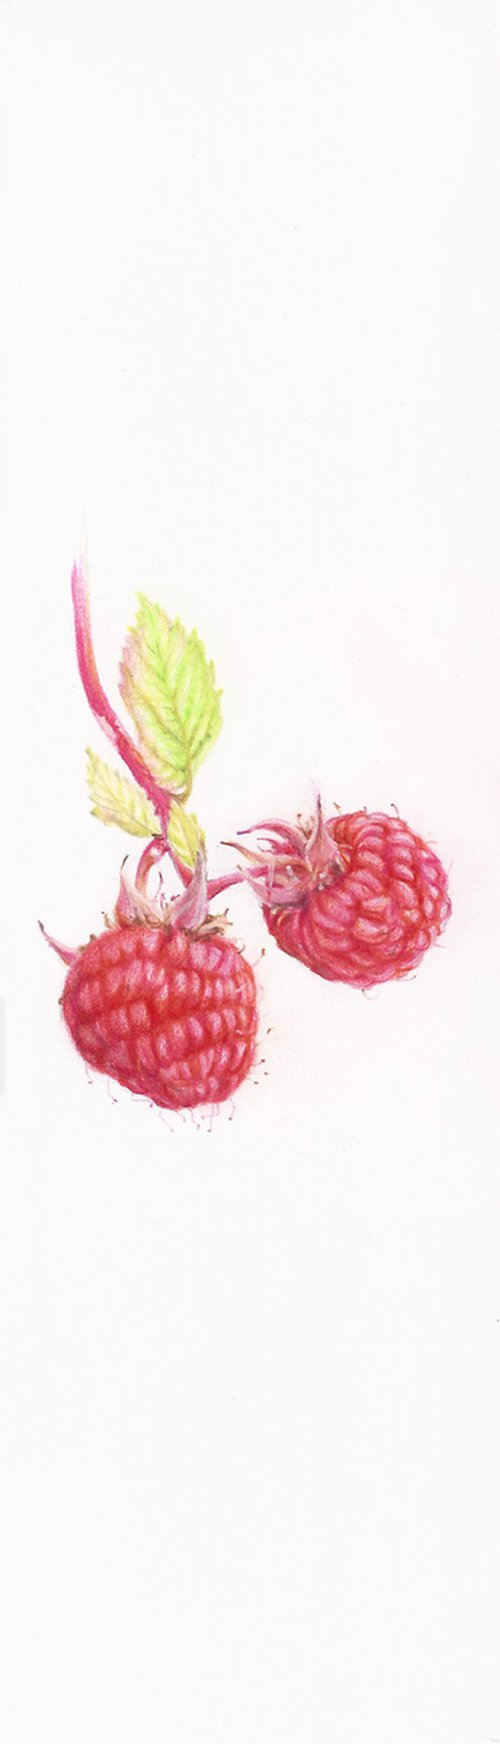 My Wild Berries as Bookmarks - The Raspberry by Katya Santoro